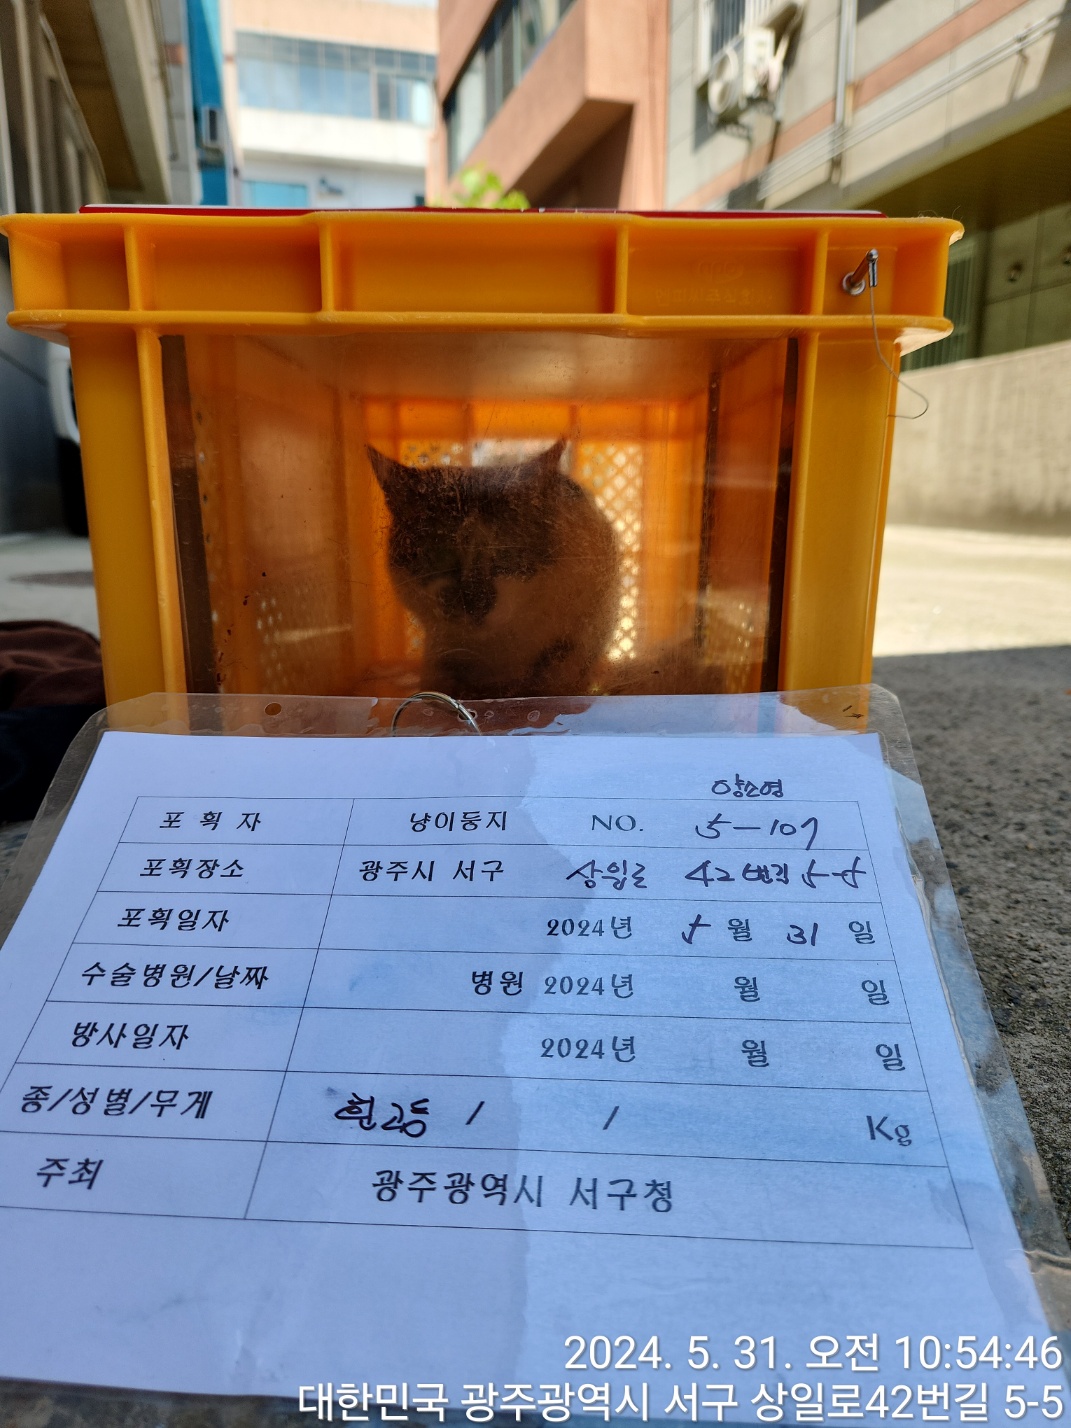 보호중동물사진 공고번호-광주-서구-2024-00309